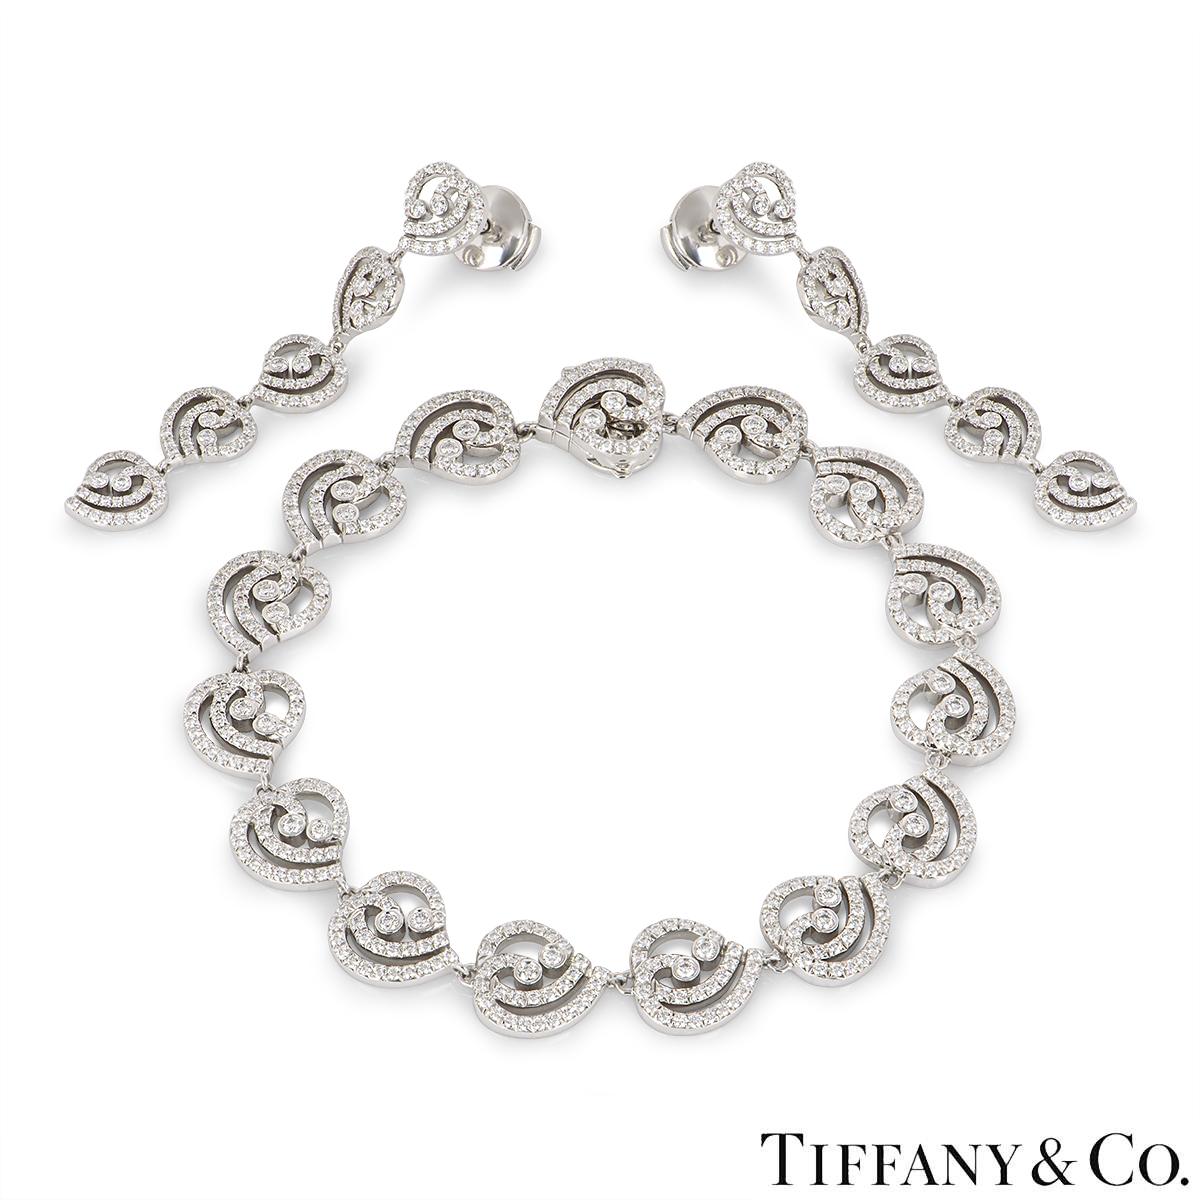 Eine schillernde Platin-Diamantenschmuck-Suite von Tiffany & Co. Die Ohrringe und das Armband sind mit runden Diamanten im Brillantschliff besetzt, die zusammen ein Gewicht von ca. 3,35 ct haben. Die Ohrringe sind 1,75 cm lang und werden mit einem